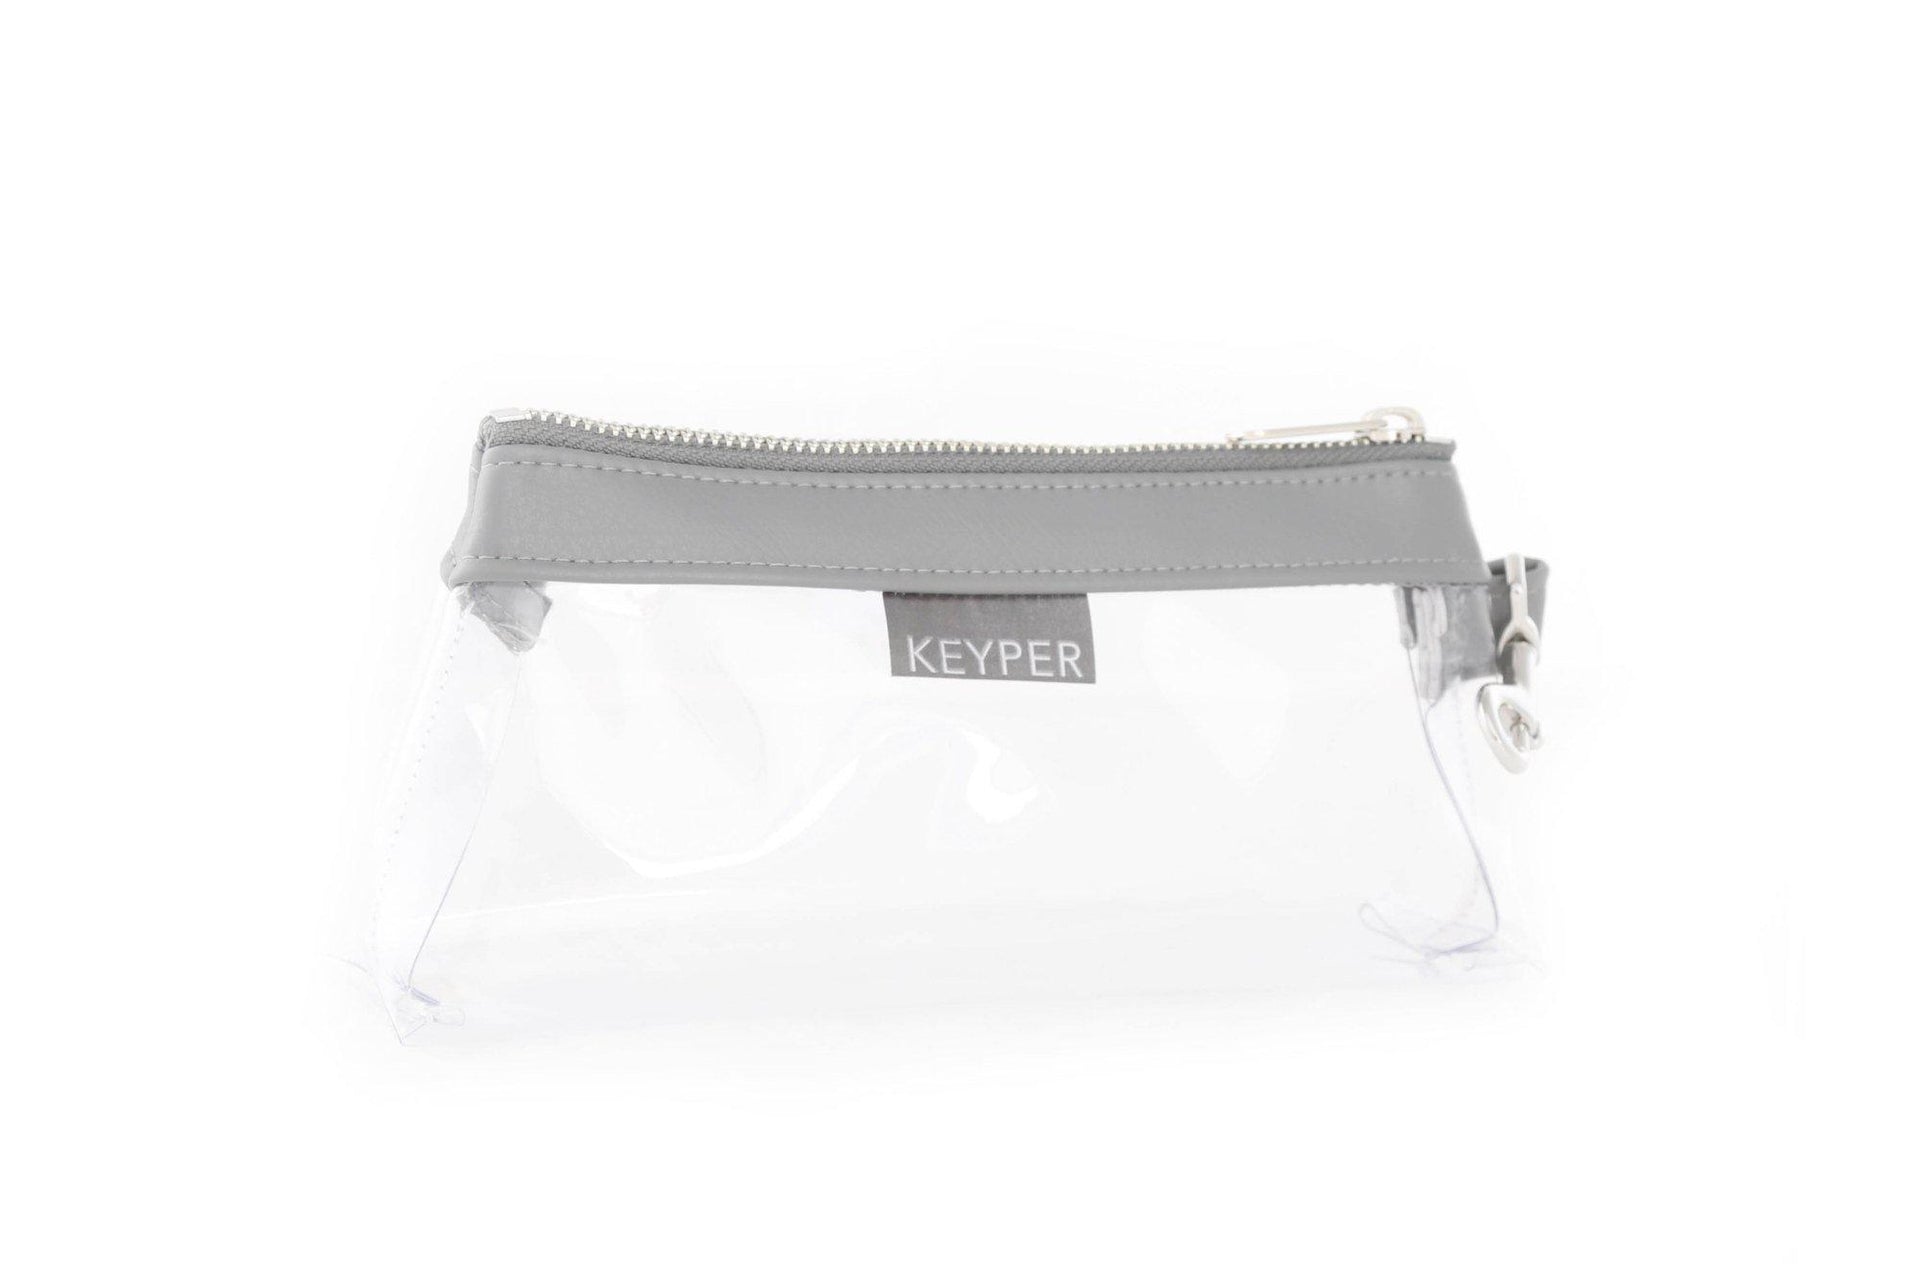  clutch purse, travel purse, key ring bracelet, faux leather (vegan), clear bag pouch, Wristlet Set